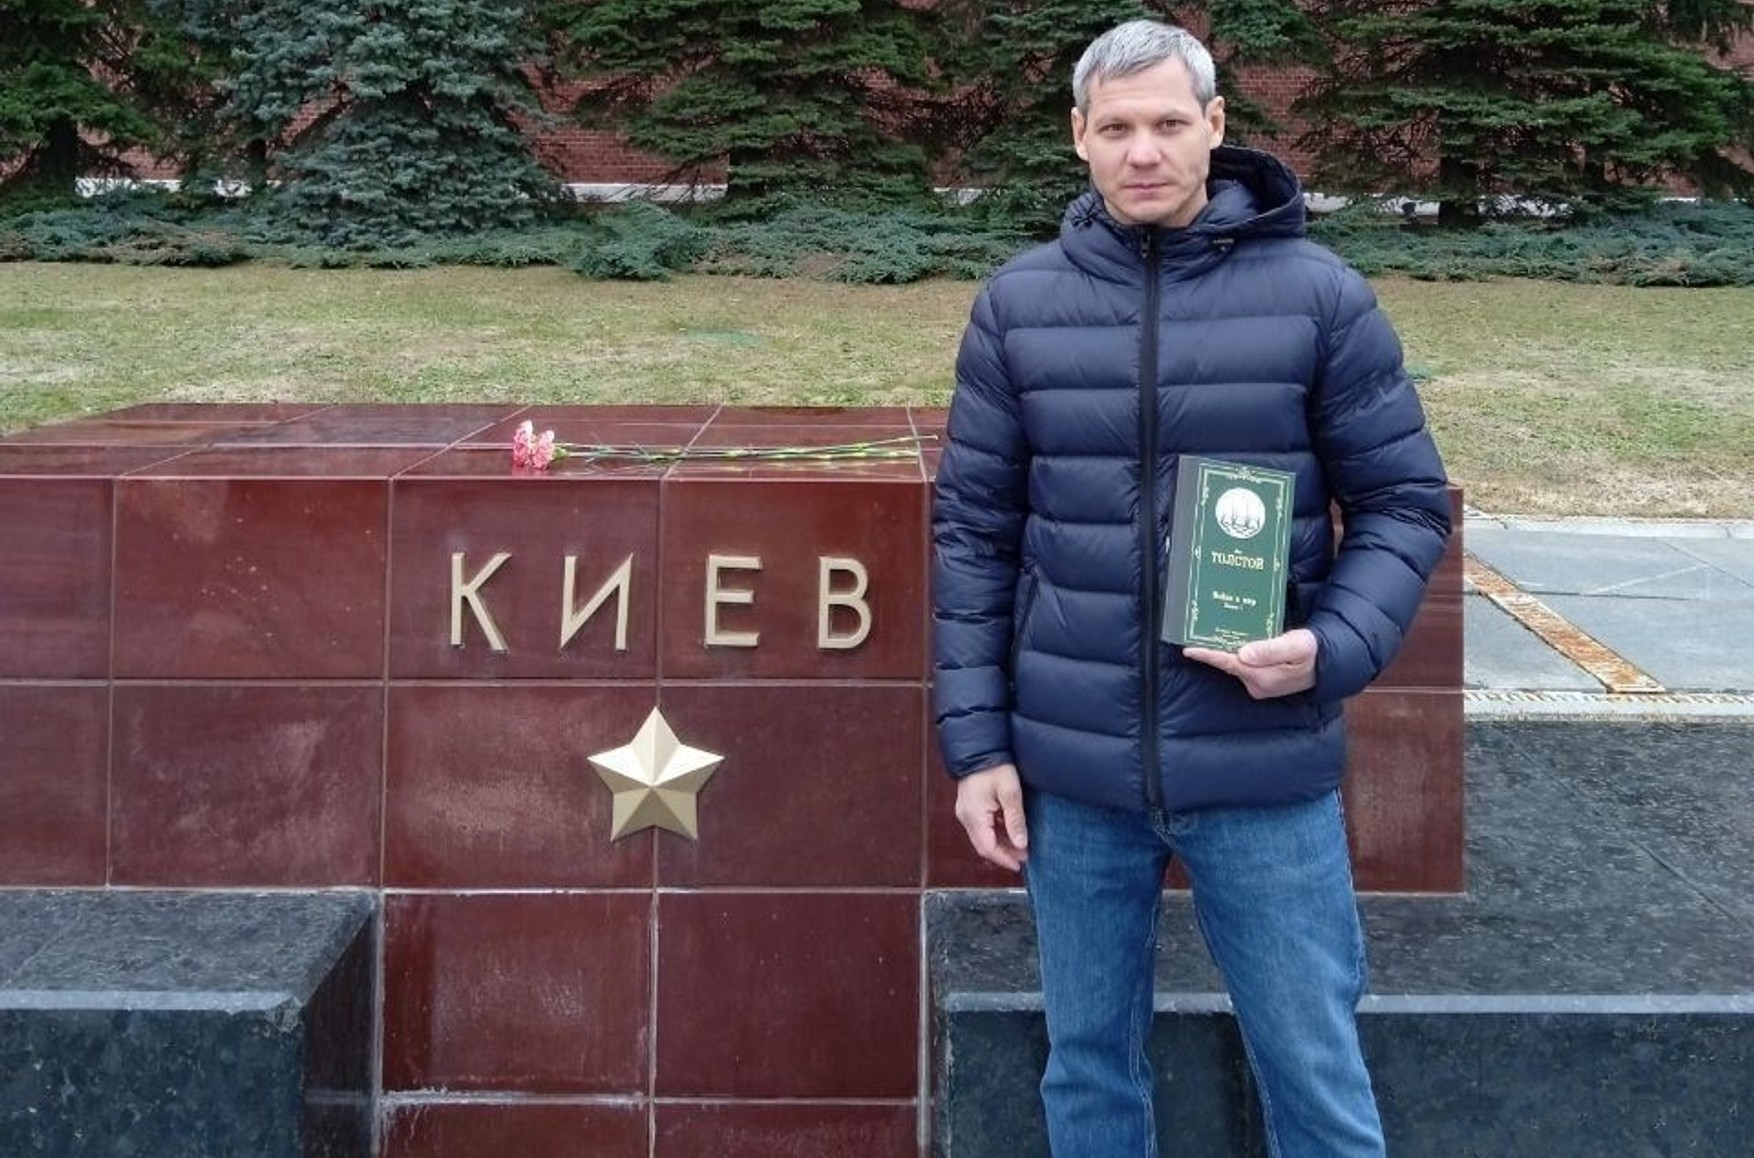 В Москве полиция задержала мужчину с книгой «Война и мир»